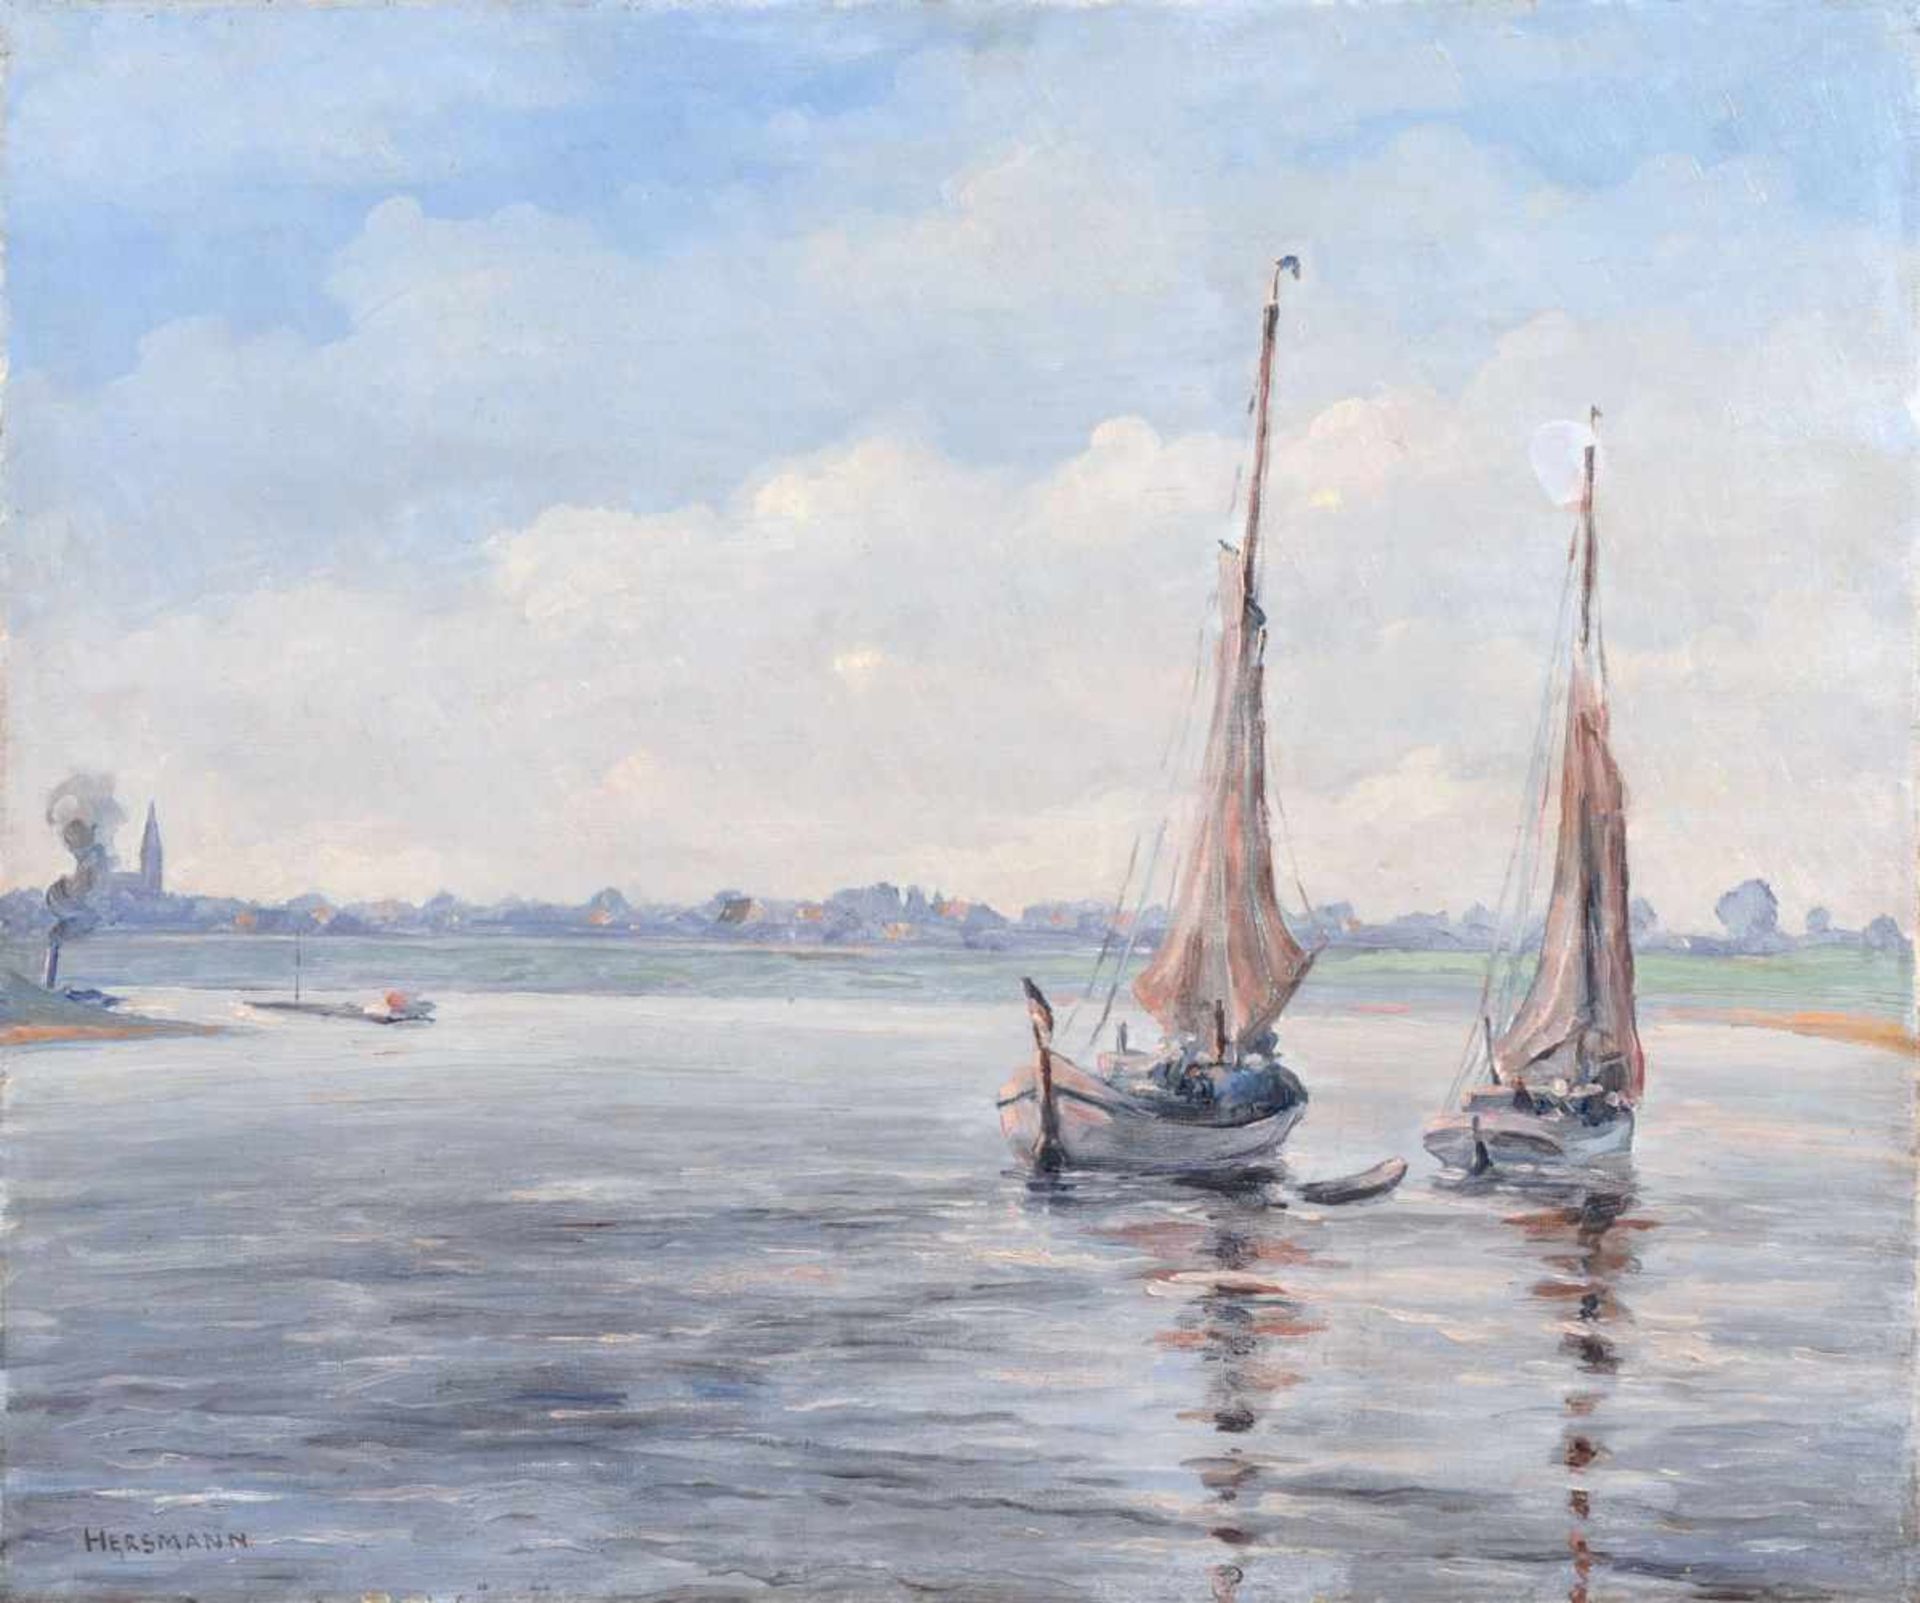 Hans Hersmann, Zwei Fischerboote vor einem Küstenort. Anfang 20. Jh. Hans Hersmann 1903 Duisburg 